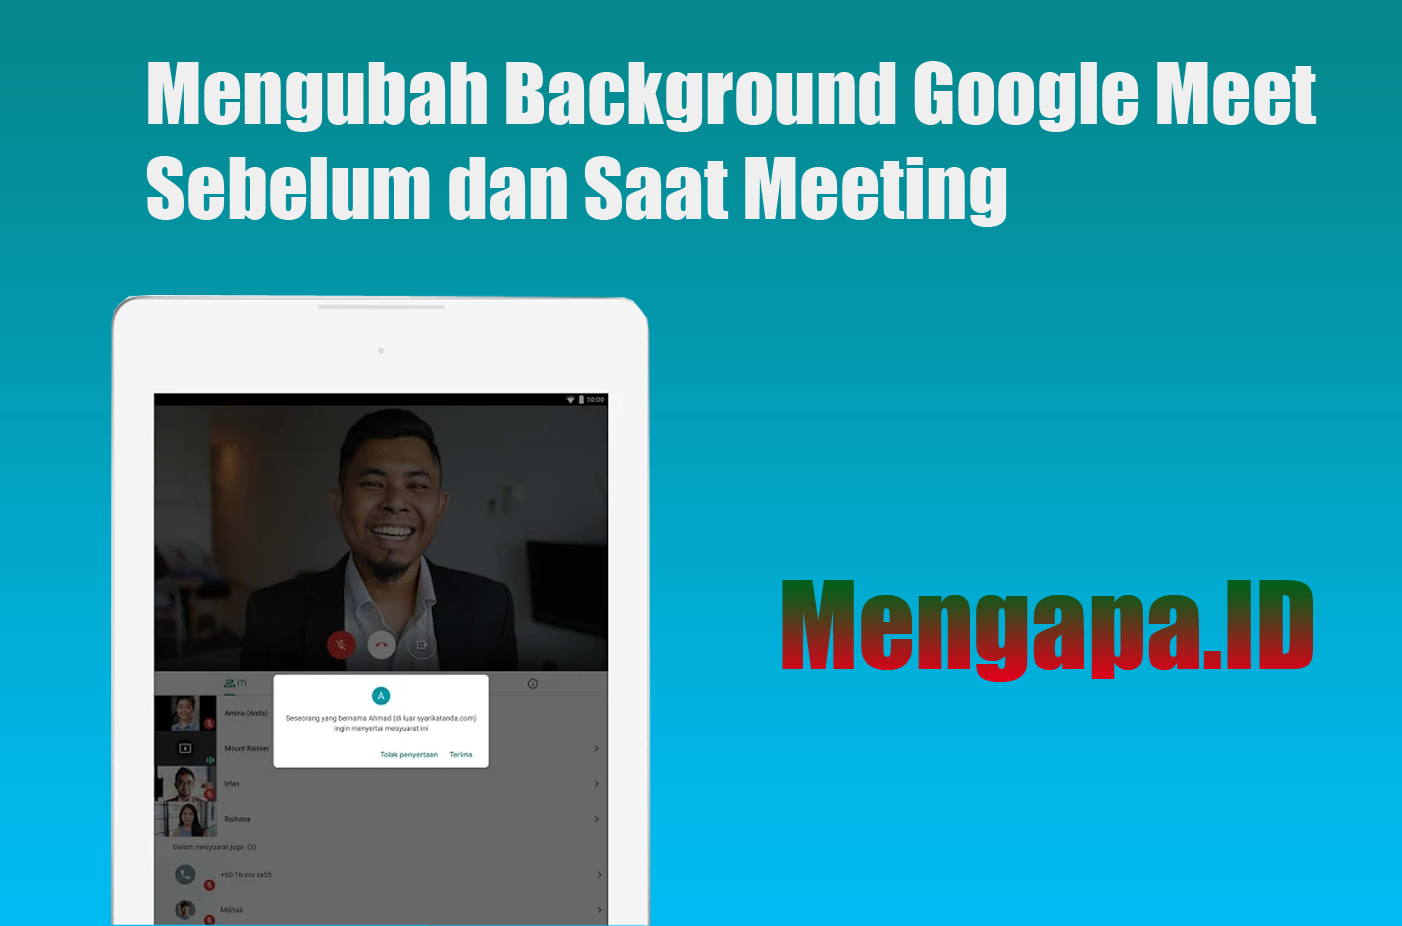 Mengubah Background Google Meet Sebelum dan Saat Meeting